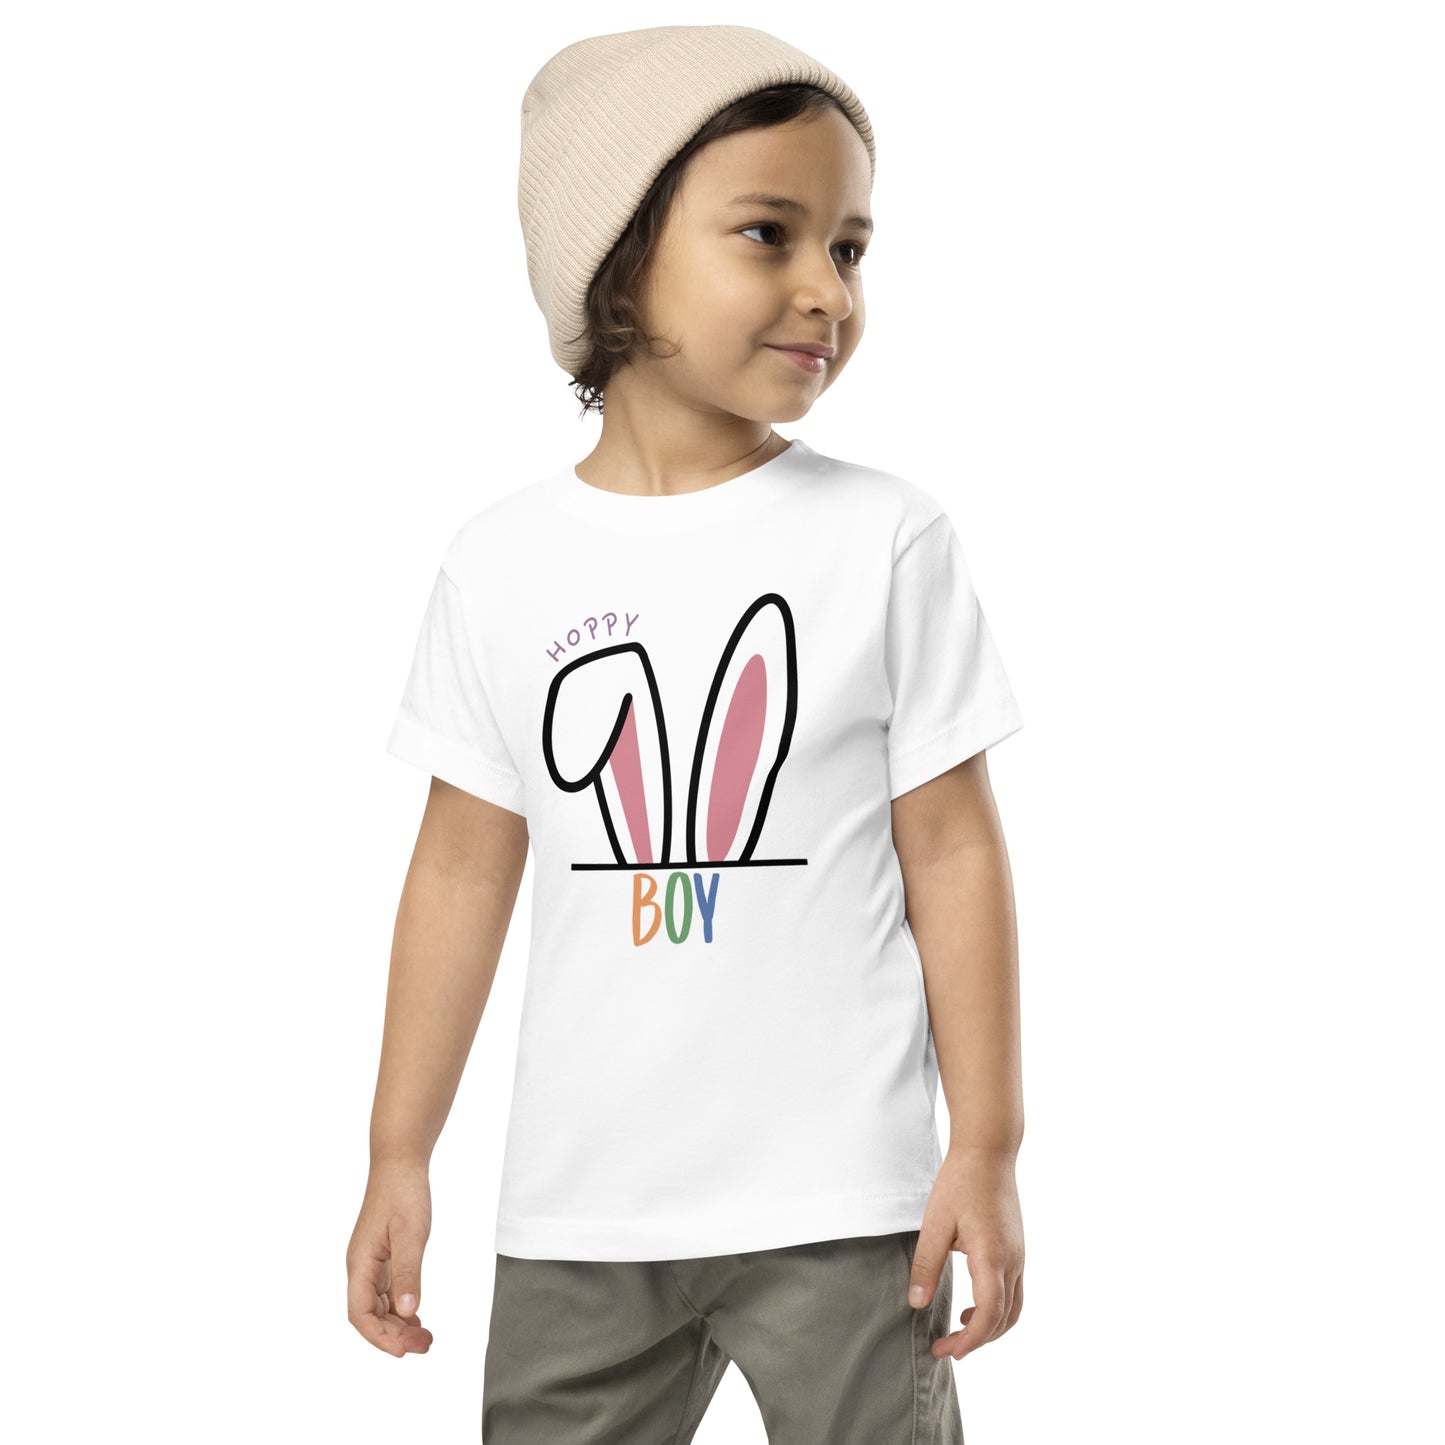 Hoppy Boy Toddler T-shirt